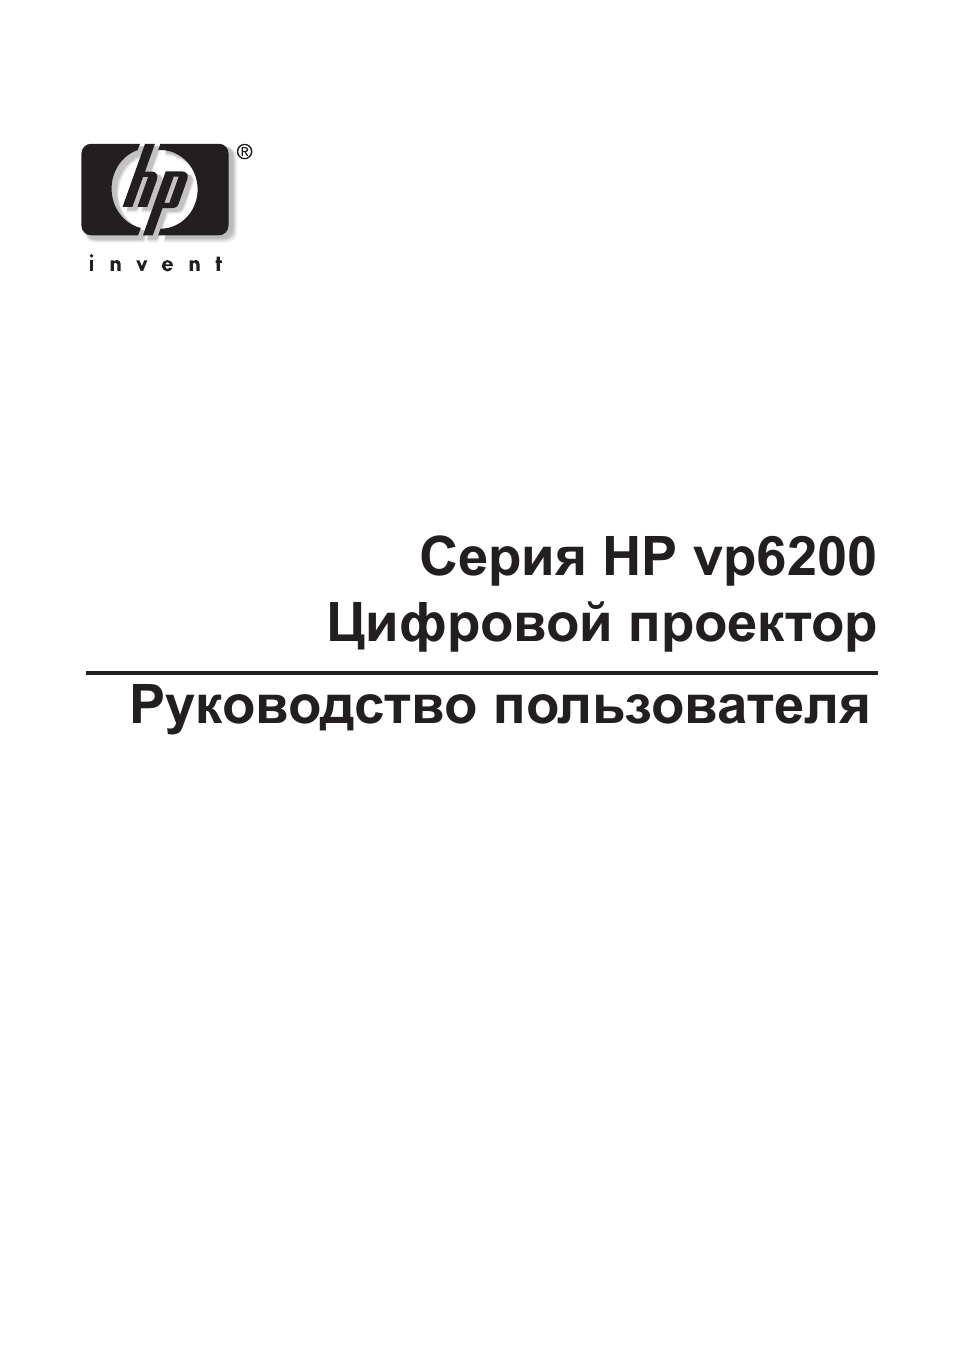 Инструкция по эксплуатации HP Цифровой проектор HP vp6210 | 41 cтраница